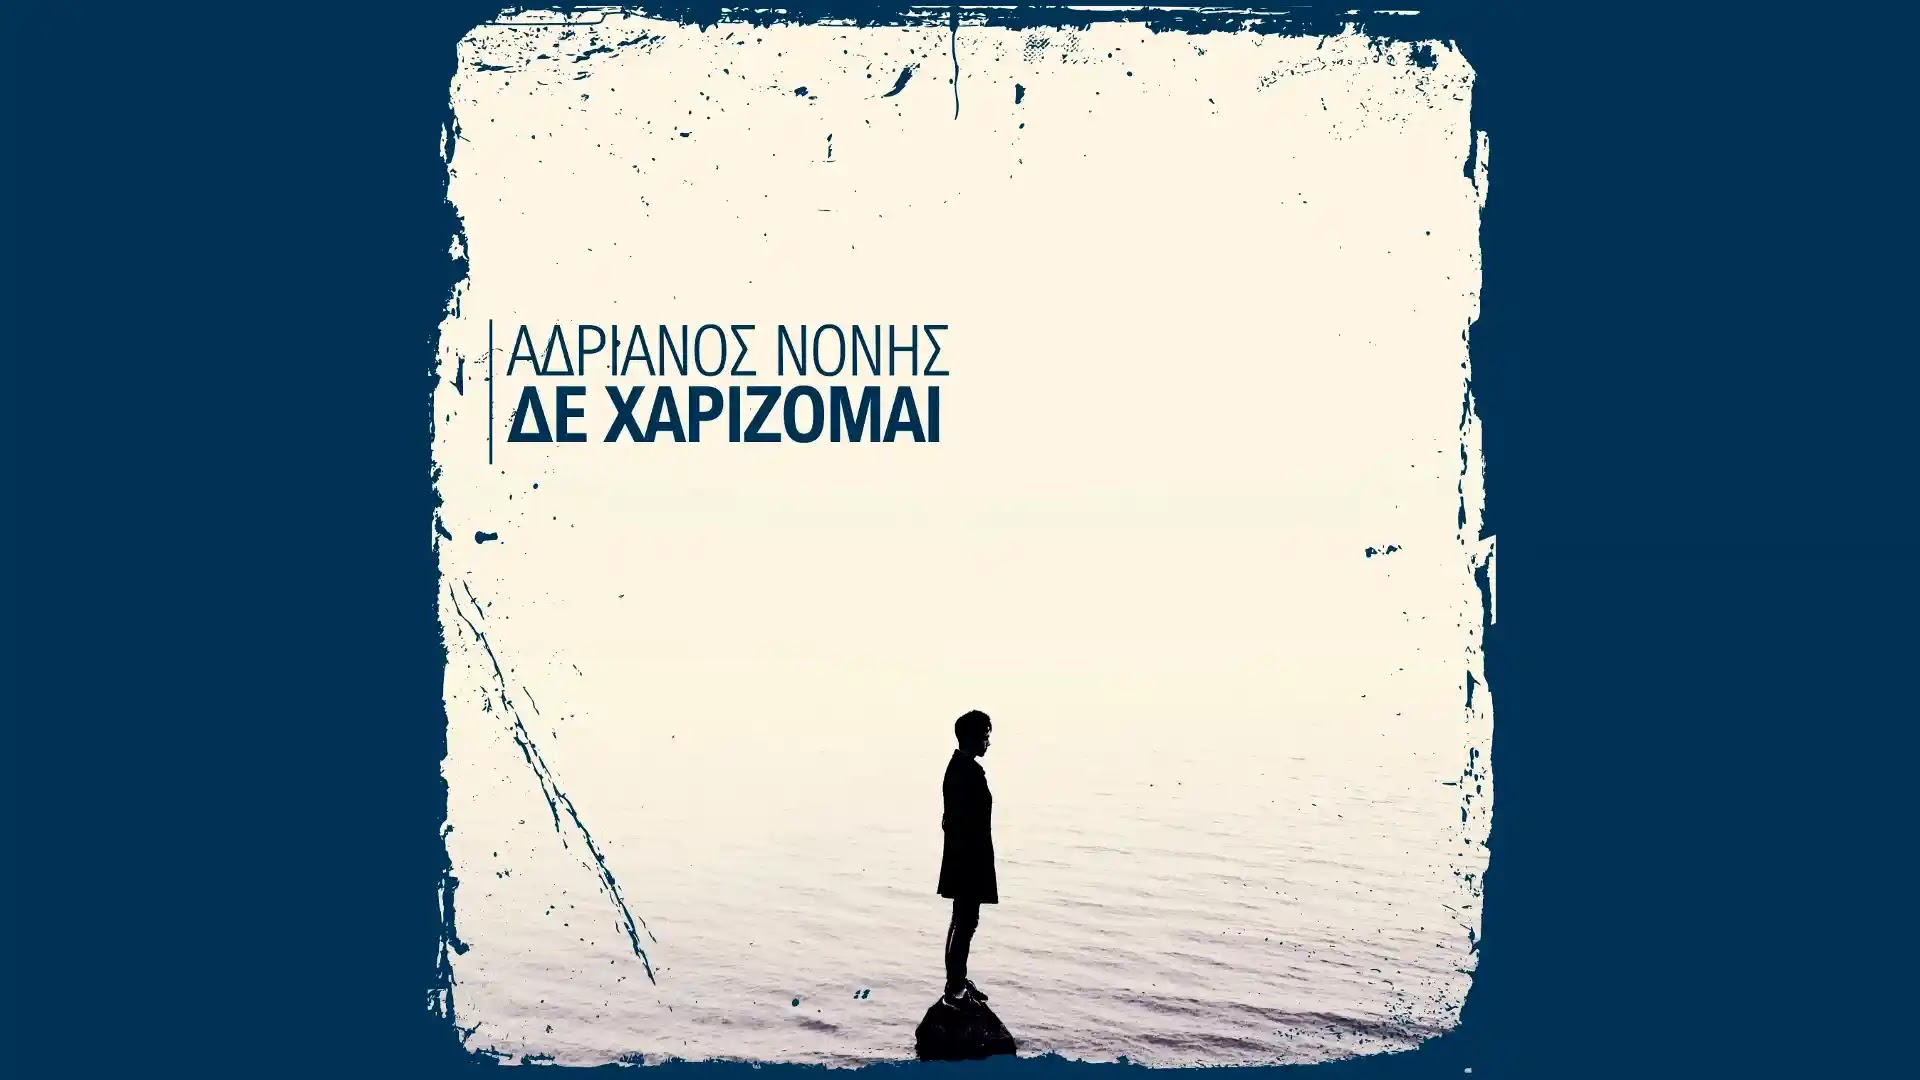 «Δεν χαρίζομαι»: Ακούστε το νέο τραγούδι από τον Ναυπλιώτη Αδριανό Νόνη